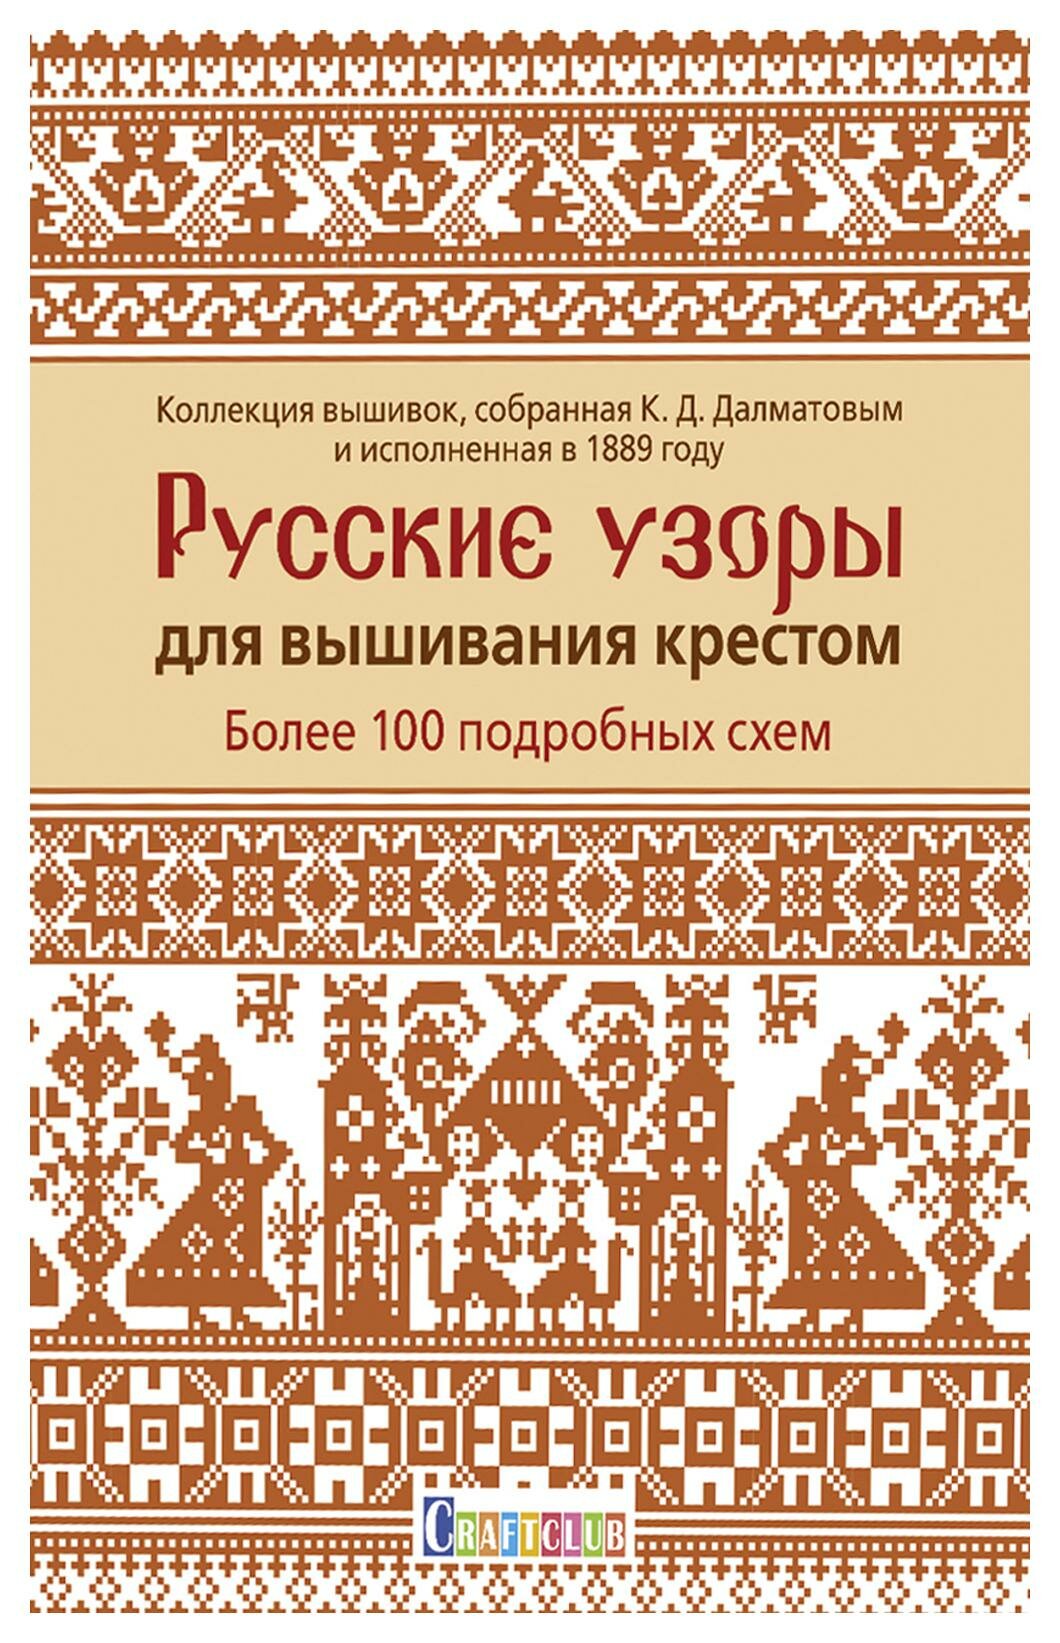 Русские узоры для вышивания крестом: Более 100 подробных схем: коллекция вышивок, собранная К. Д. Далматовым и исполненная в 1889 году. Контэнт-канц